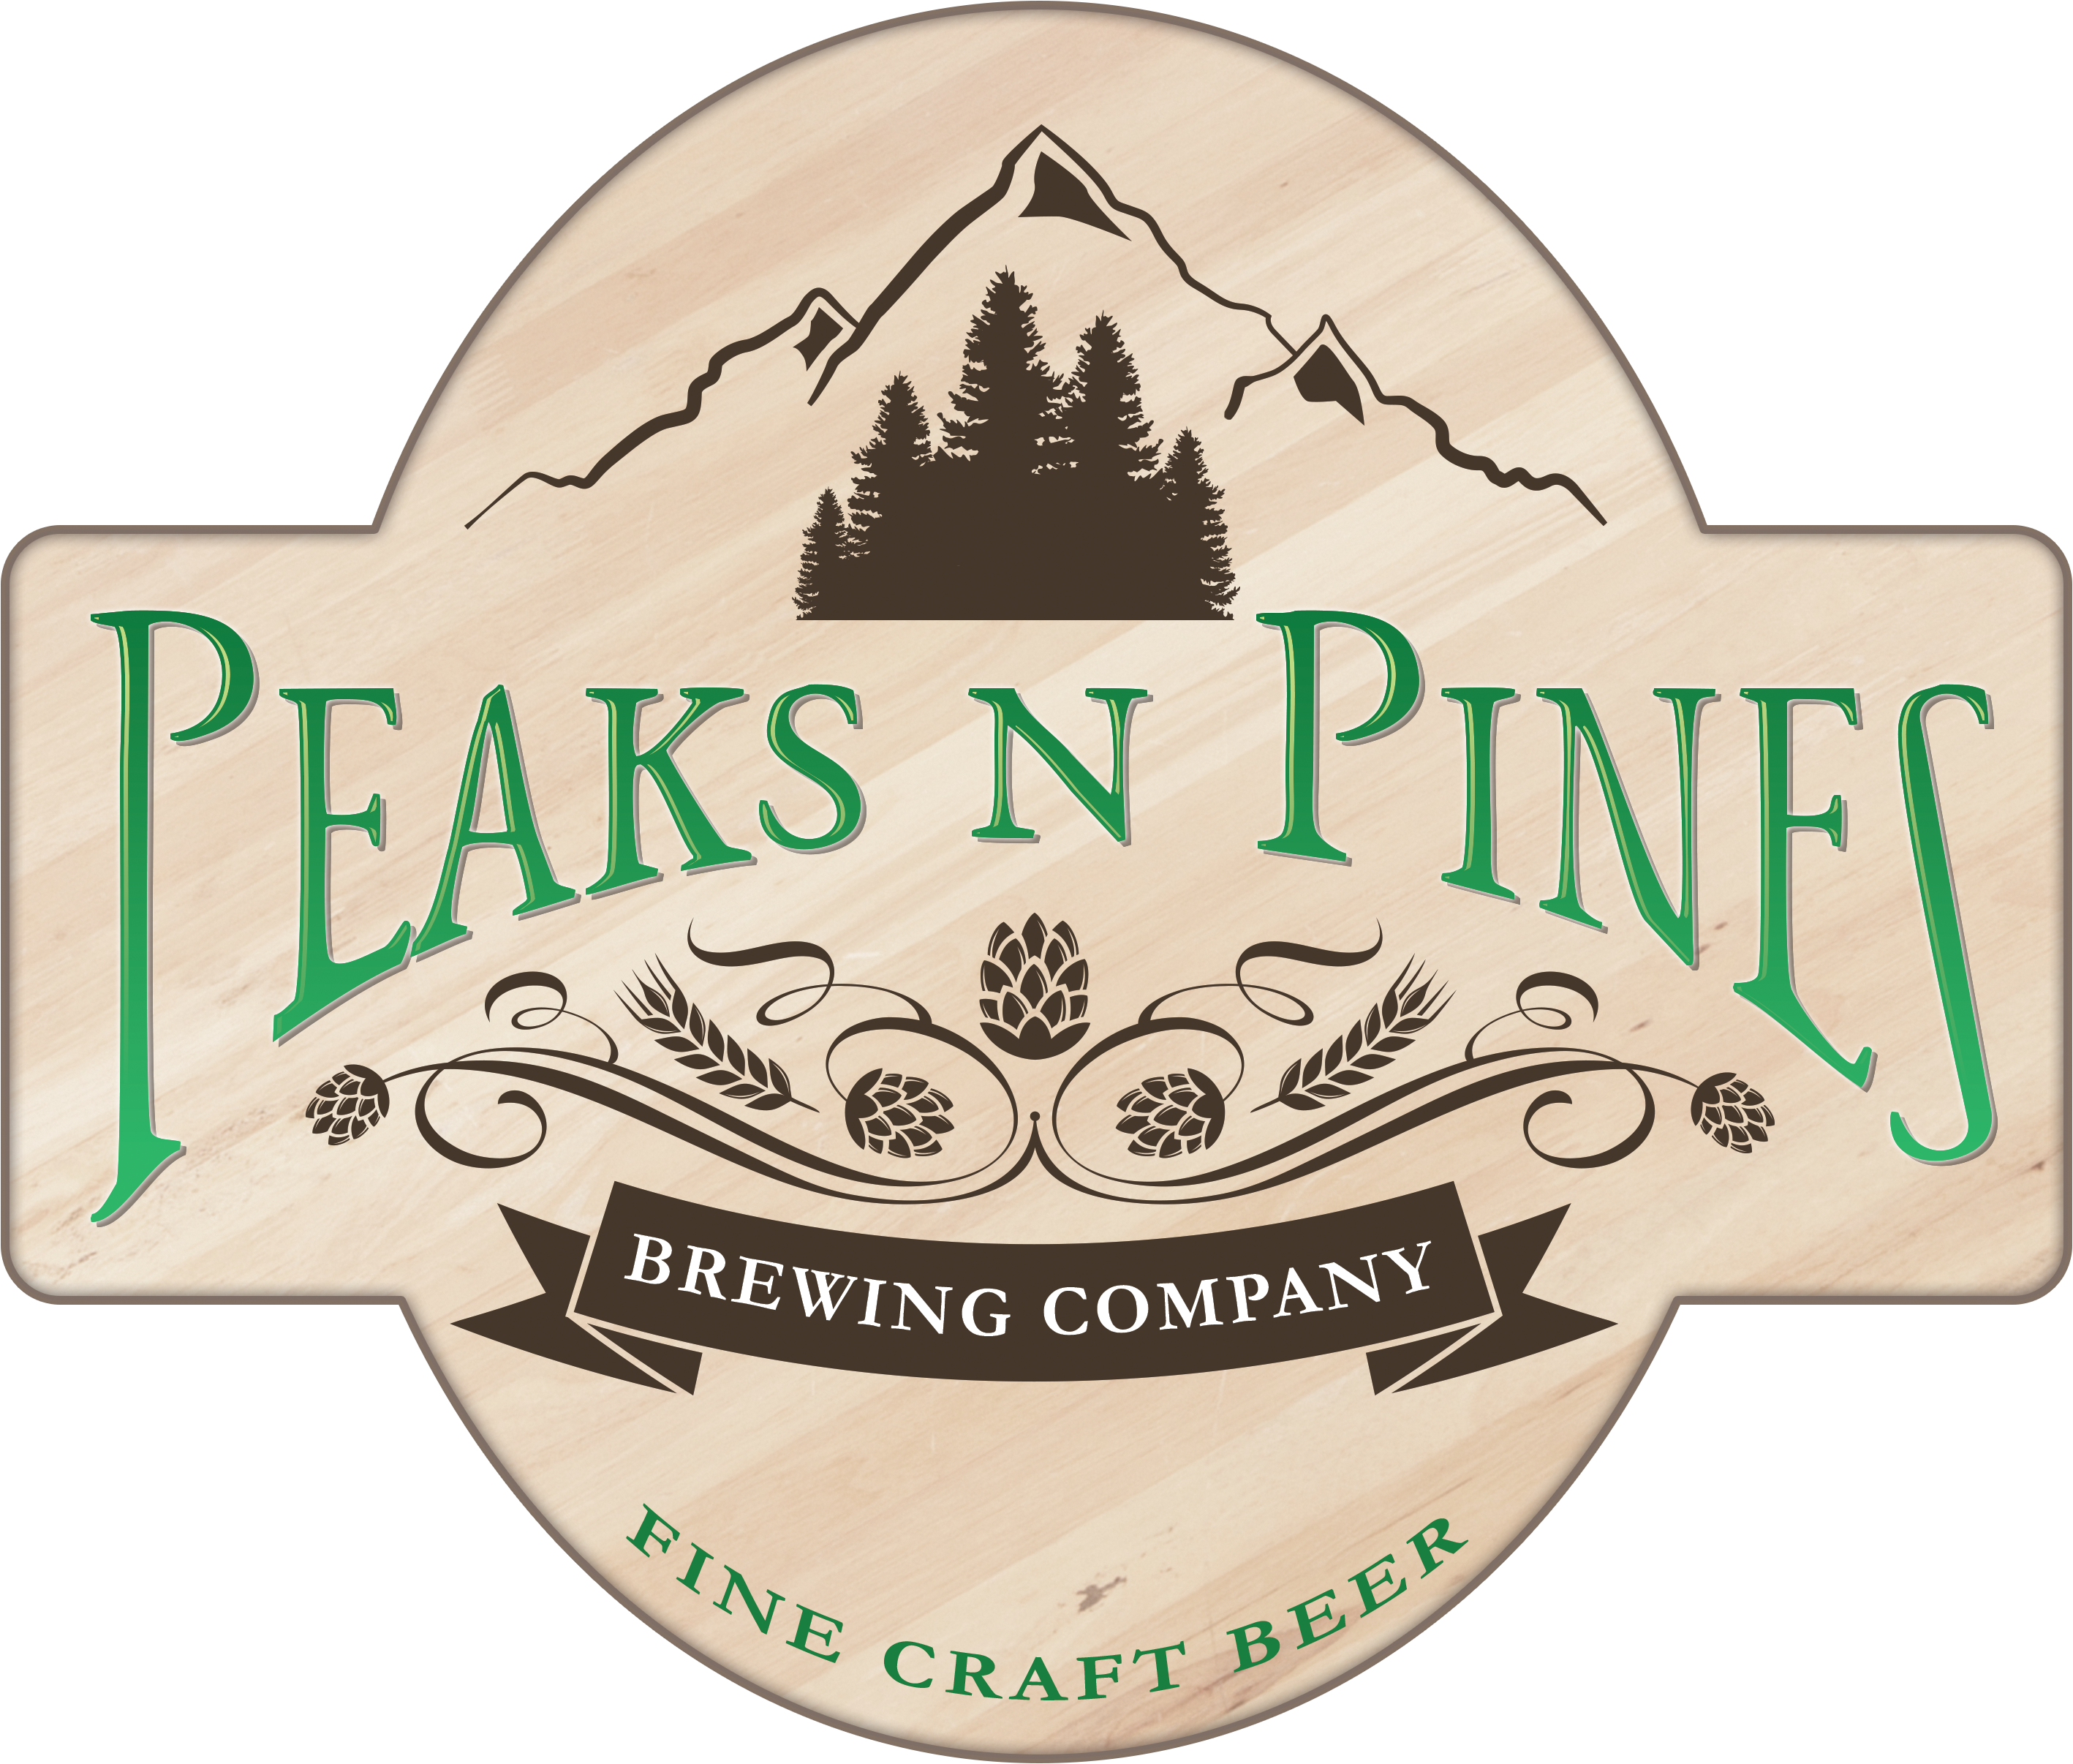 Peaks N Pines Brewing Company